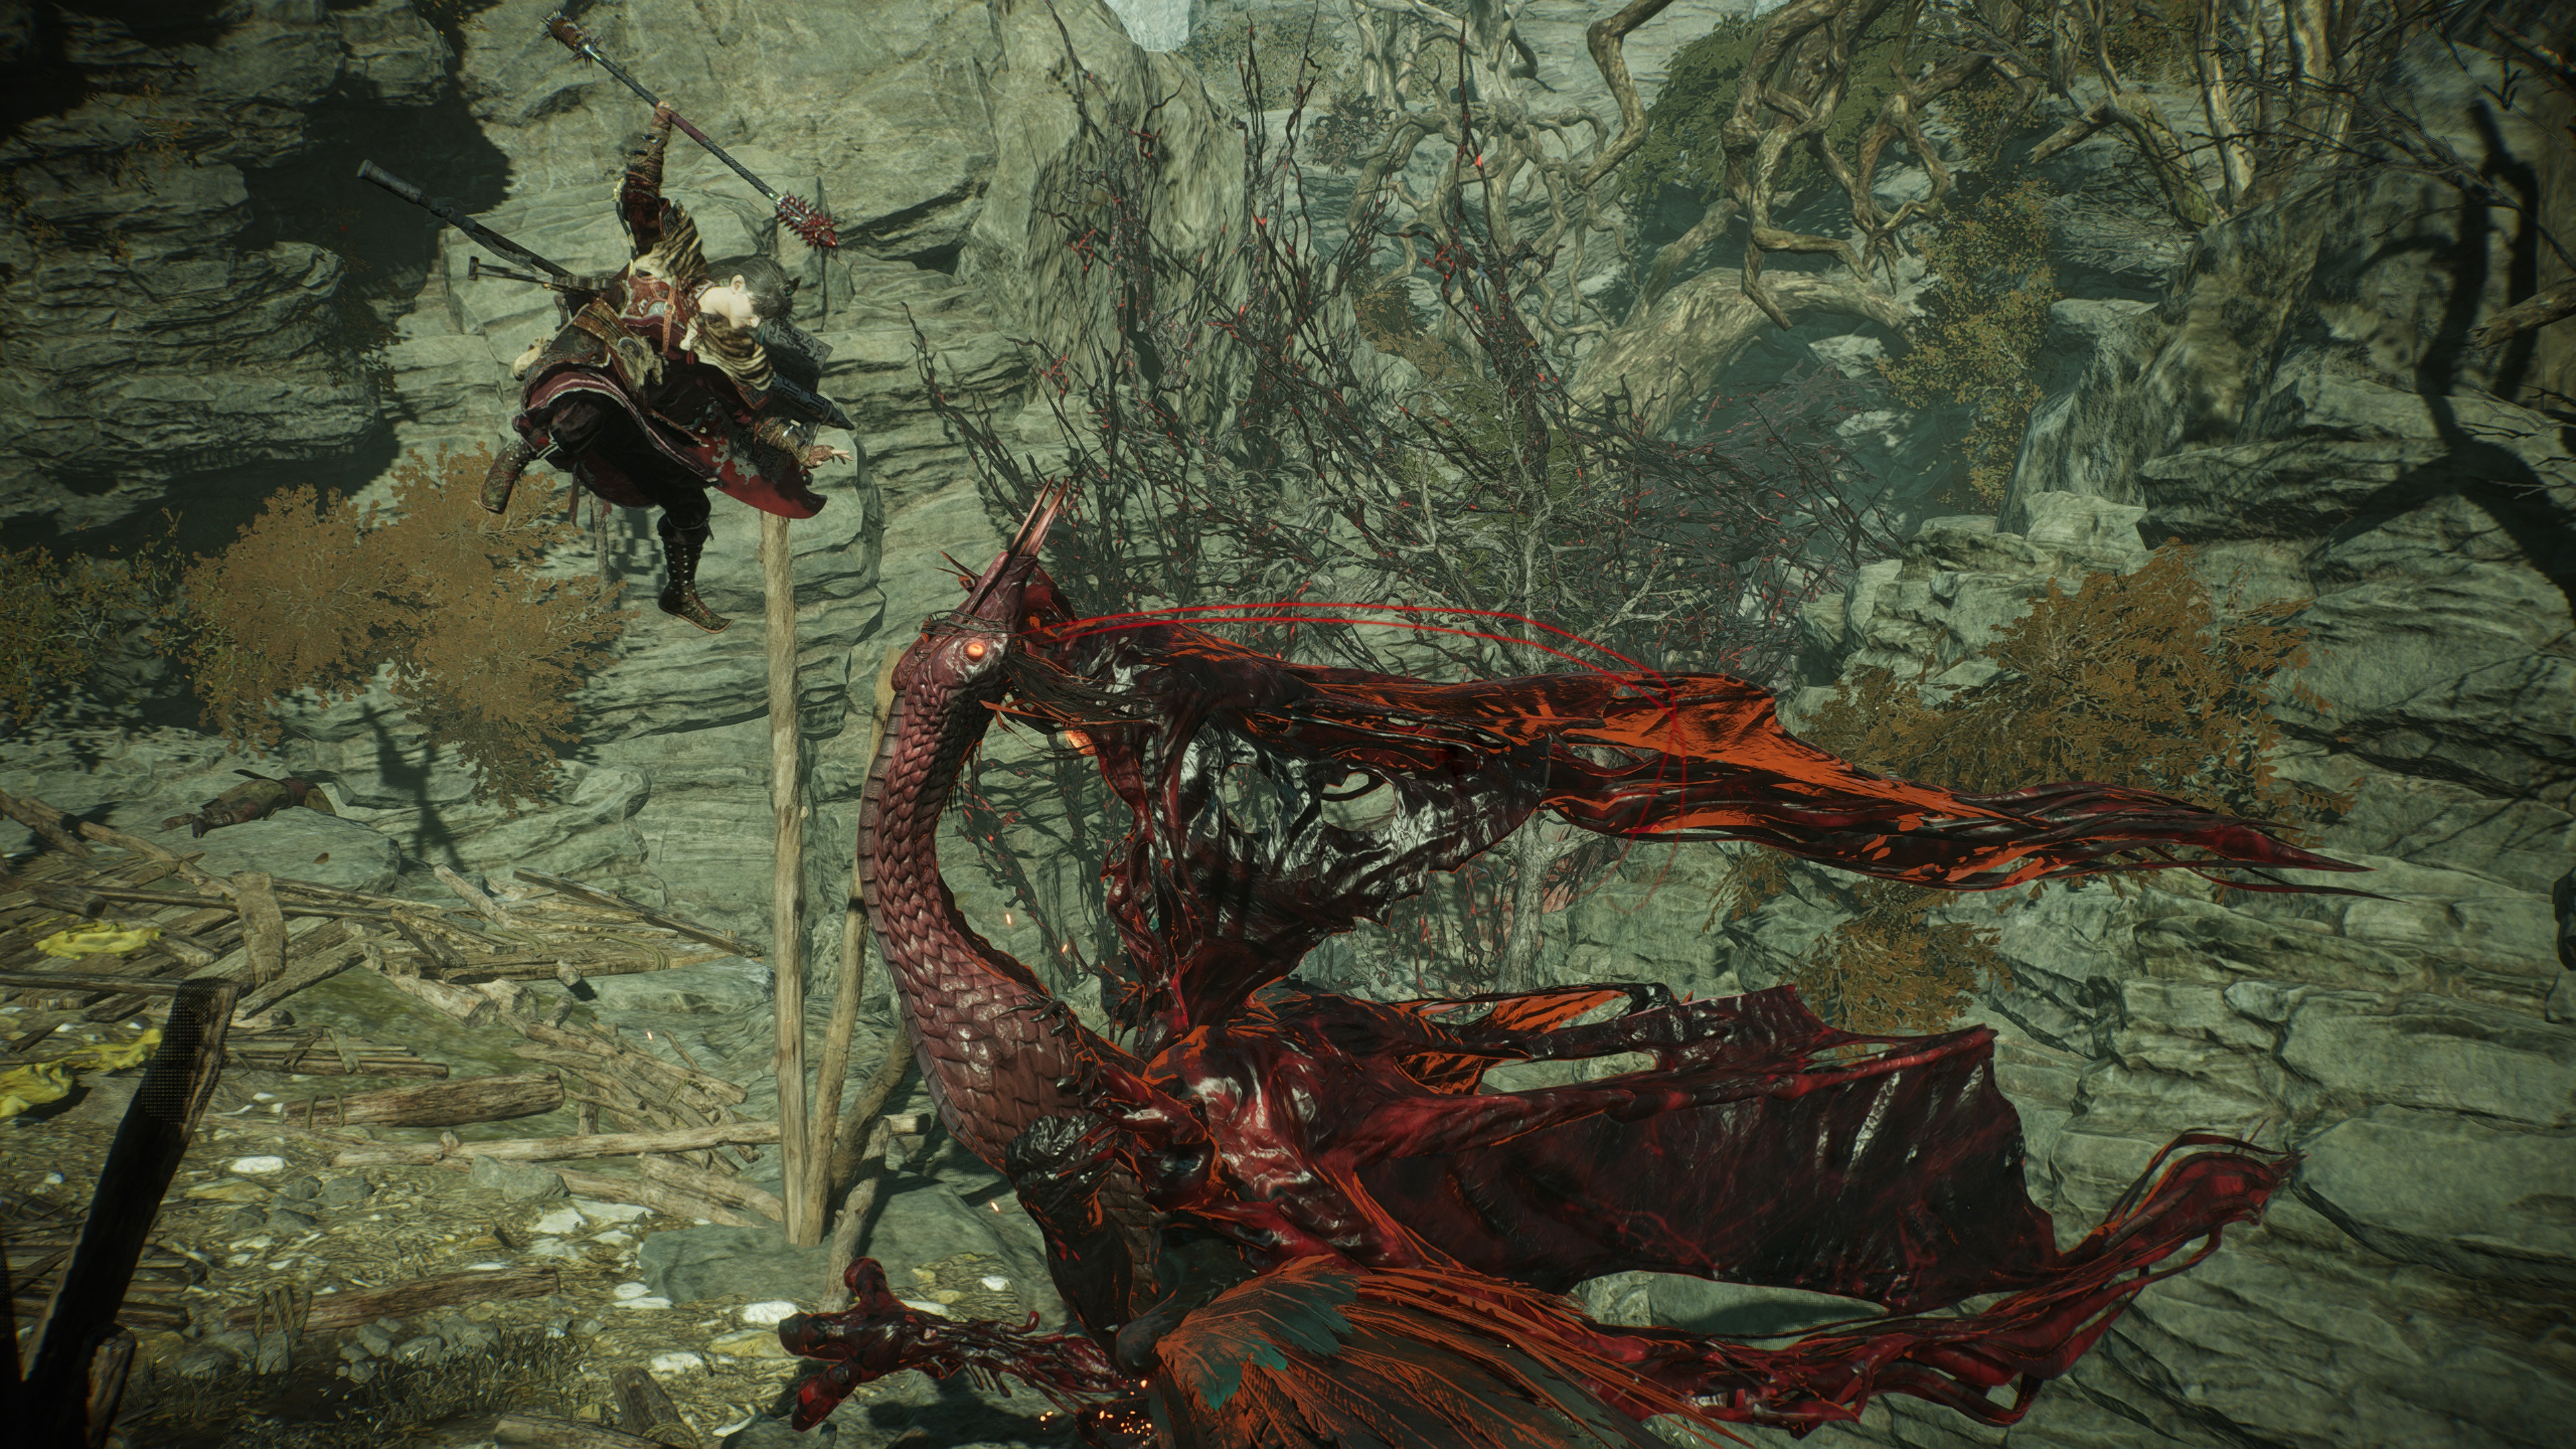 Внутриигровой скриншот Wo Long: Fallen Dynasty, на котором игрок наносит Fatal Strike на Suanyu, сделанный в режиме Photograph.